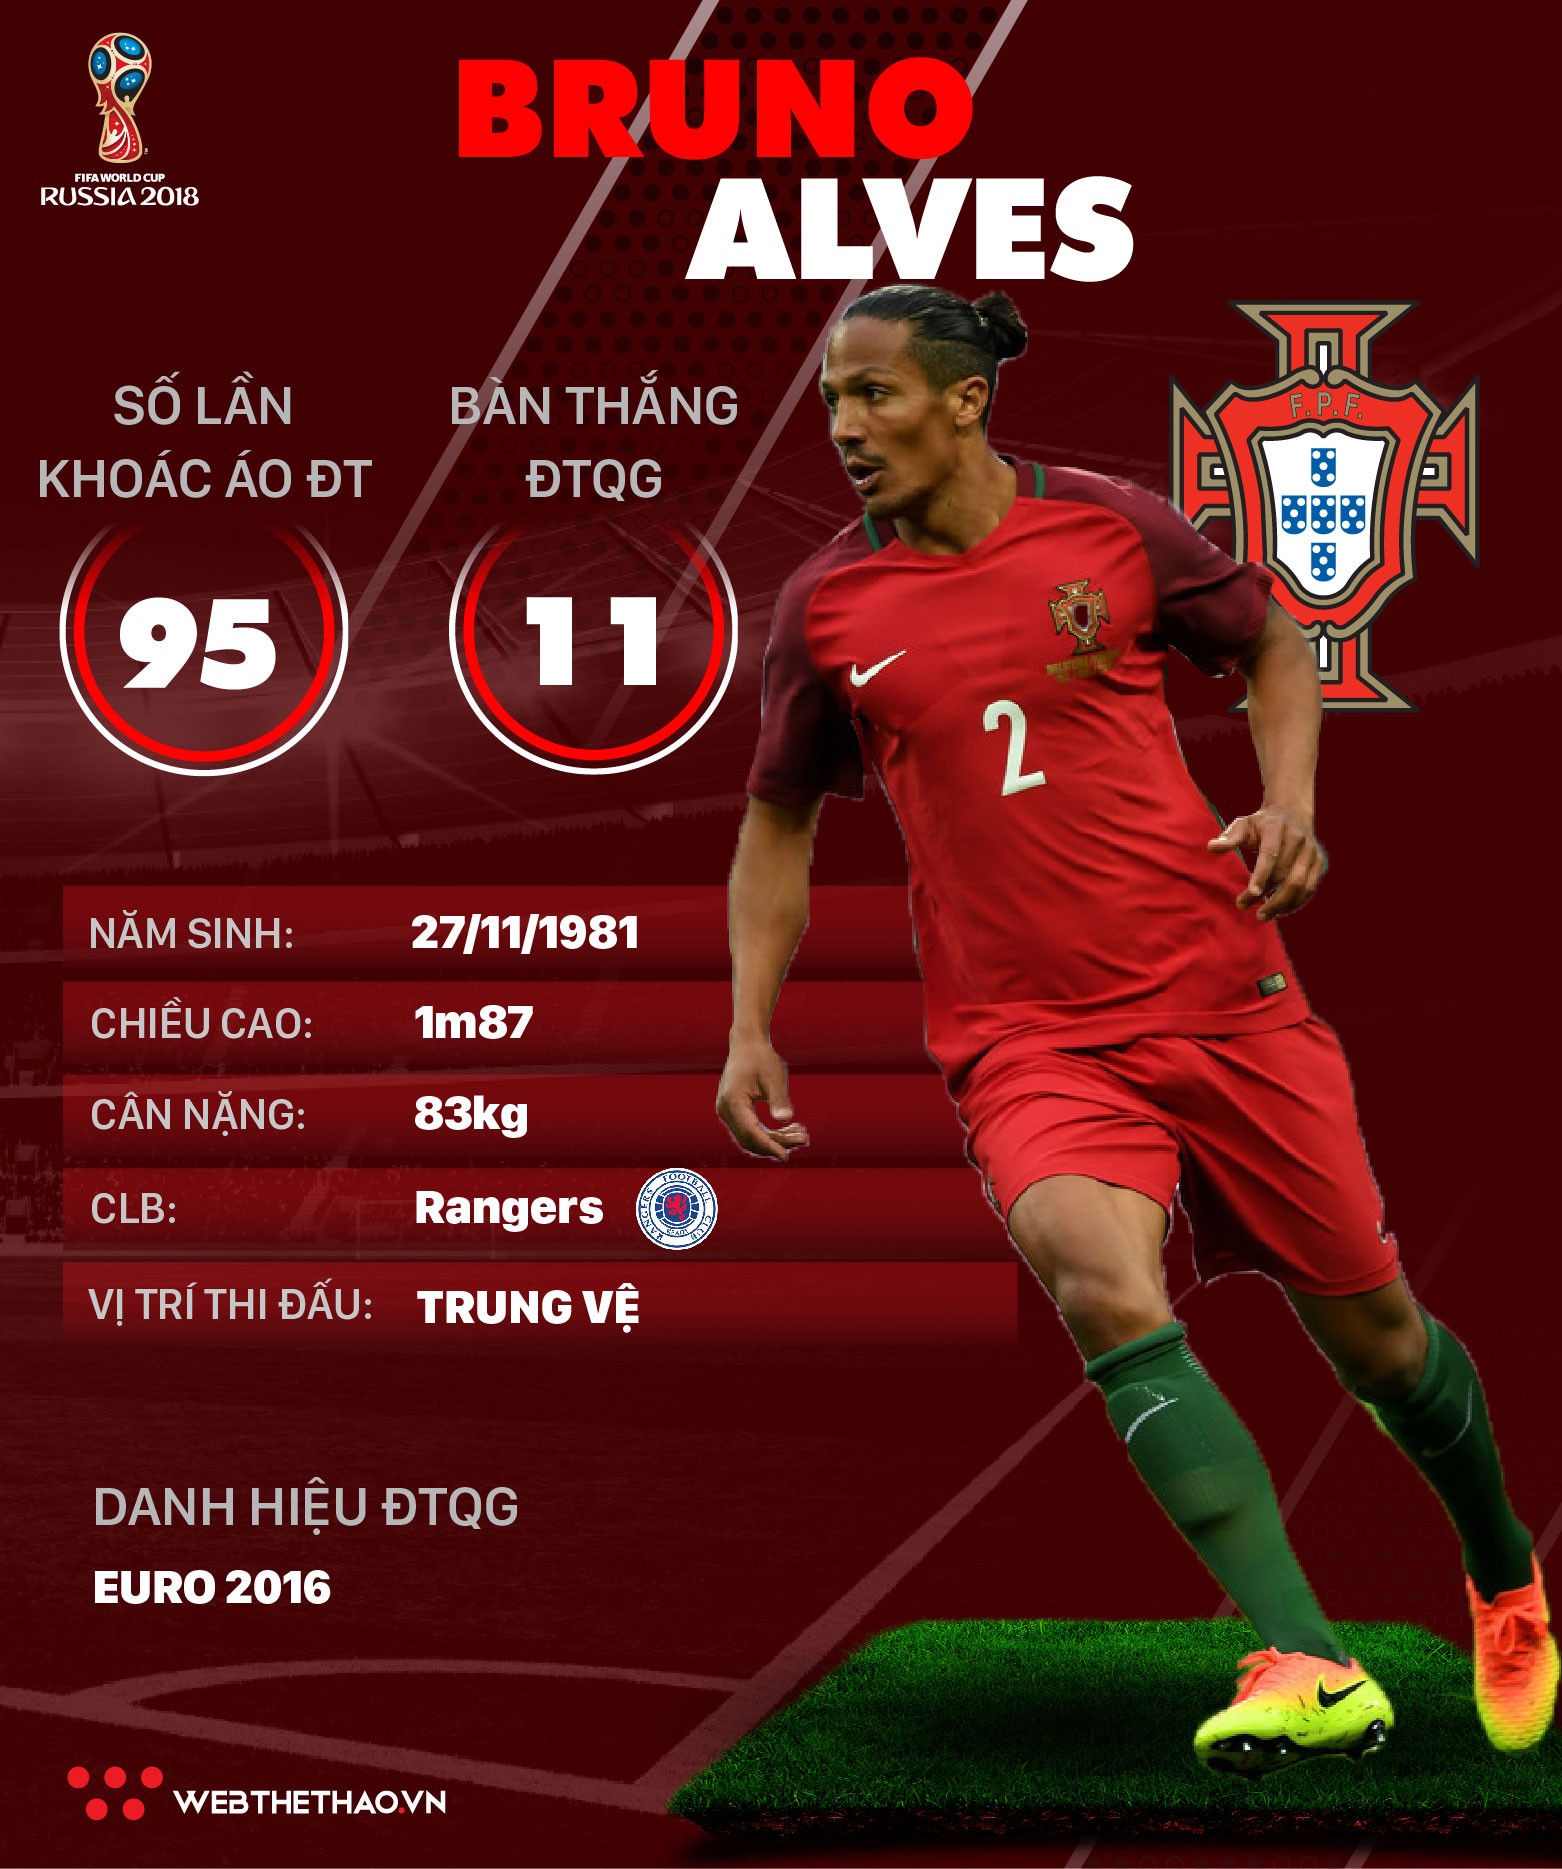 Thông tin cầu thủ Bruno Alves của ĐT Bồ Đào Nha dự World Cup 2018 - Ảnh 1.